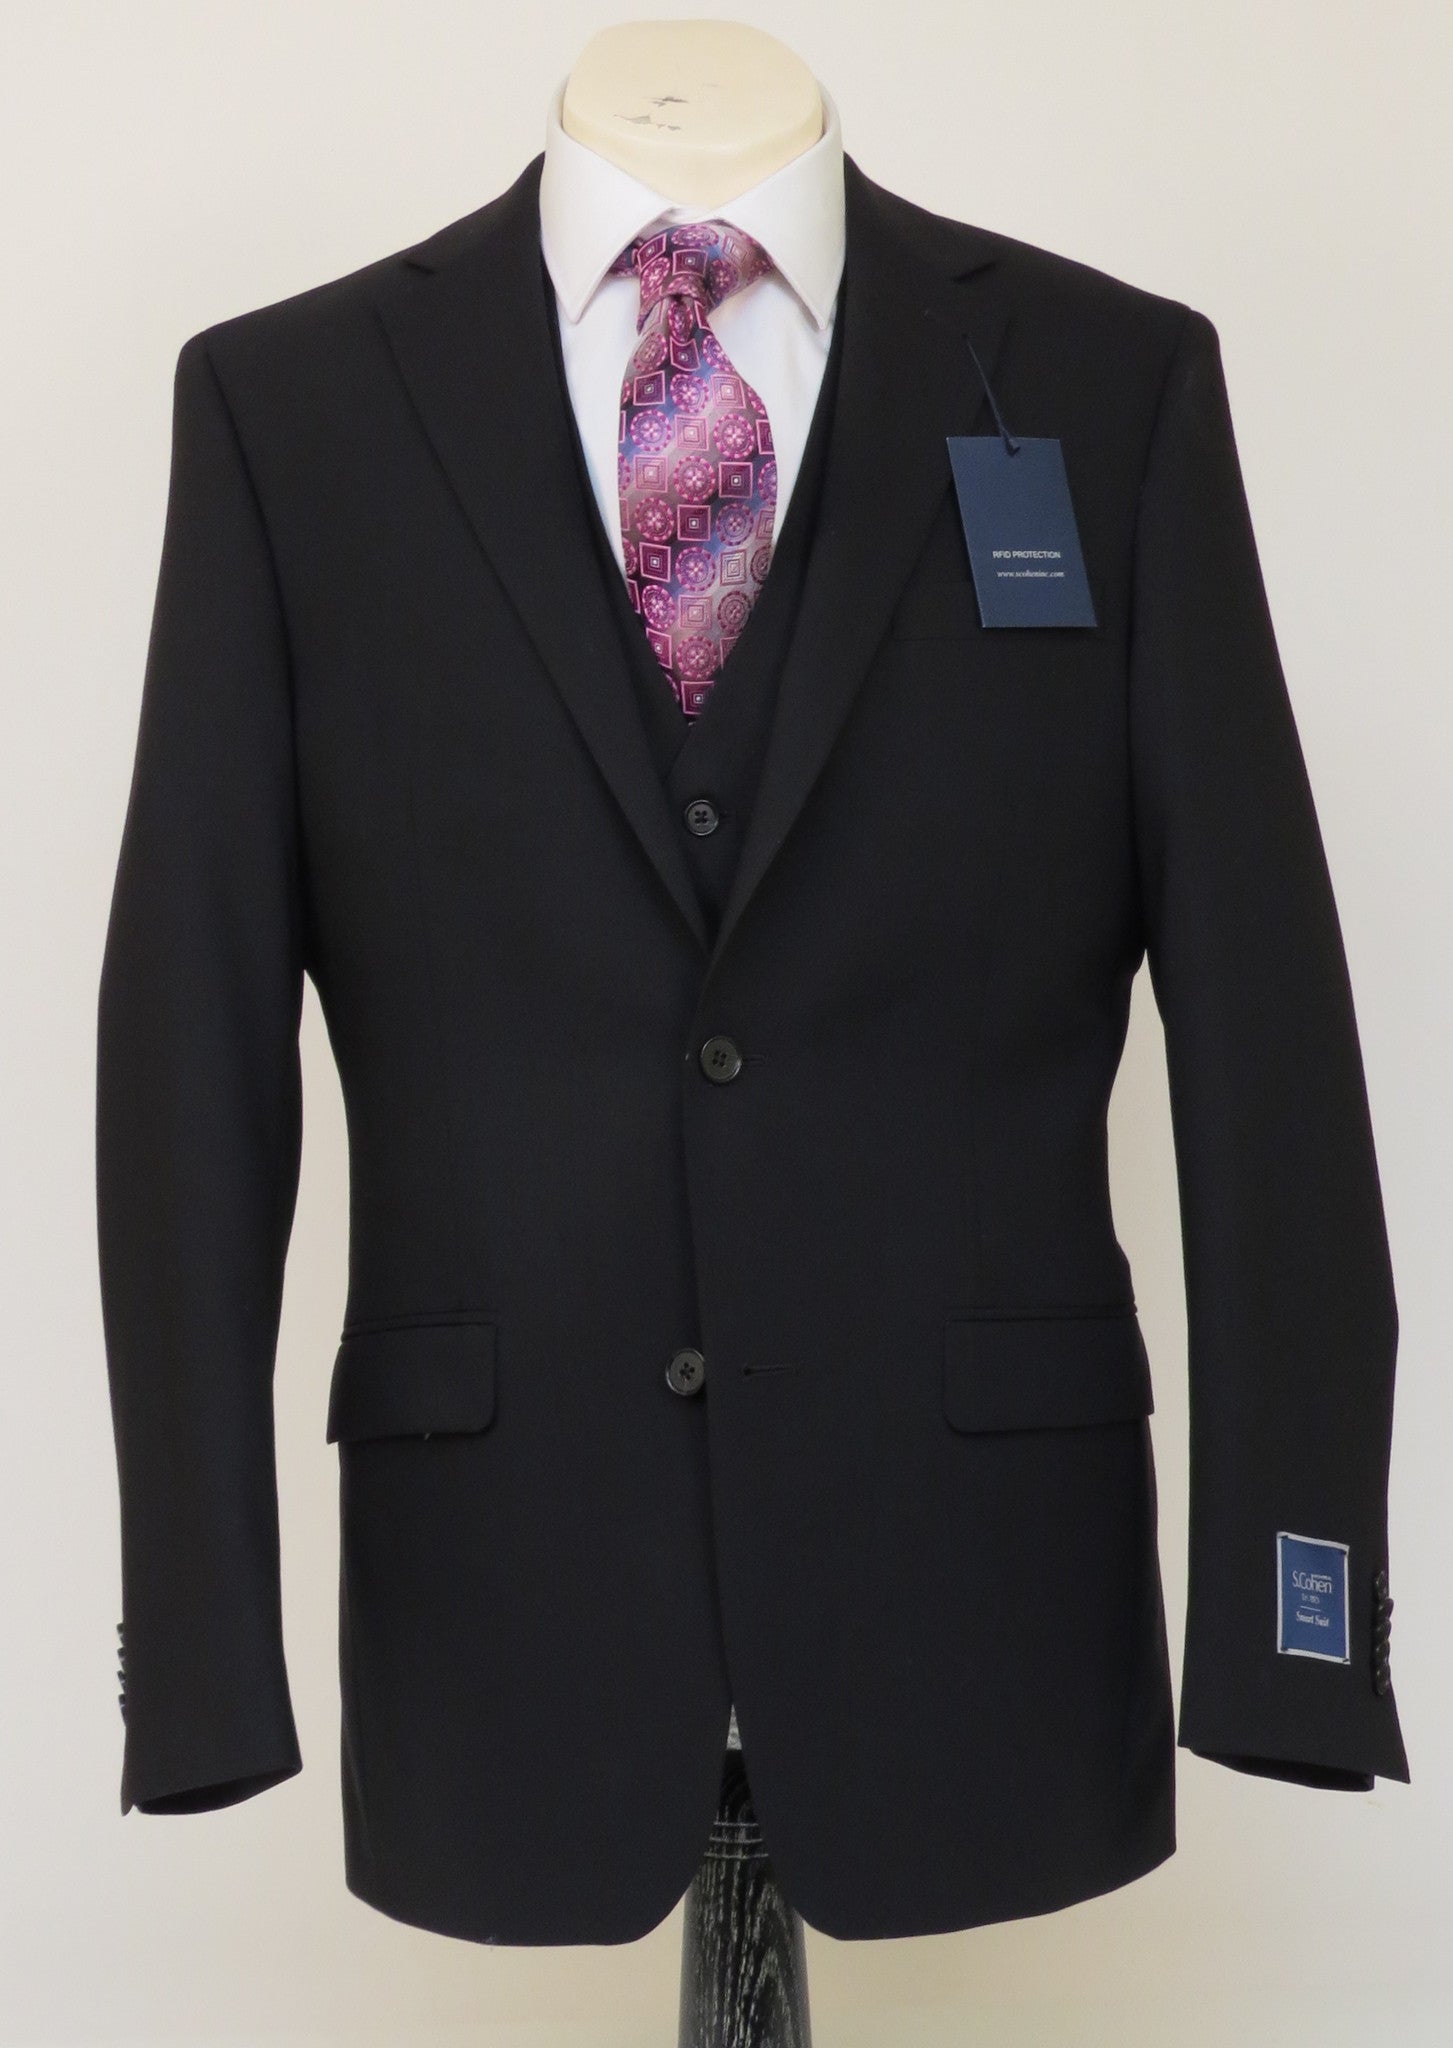 S. Cohen - Smart Suit - 4J00S8-P - Modern Fit - Black - 100% Wool ...